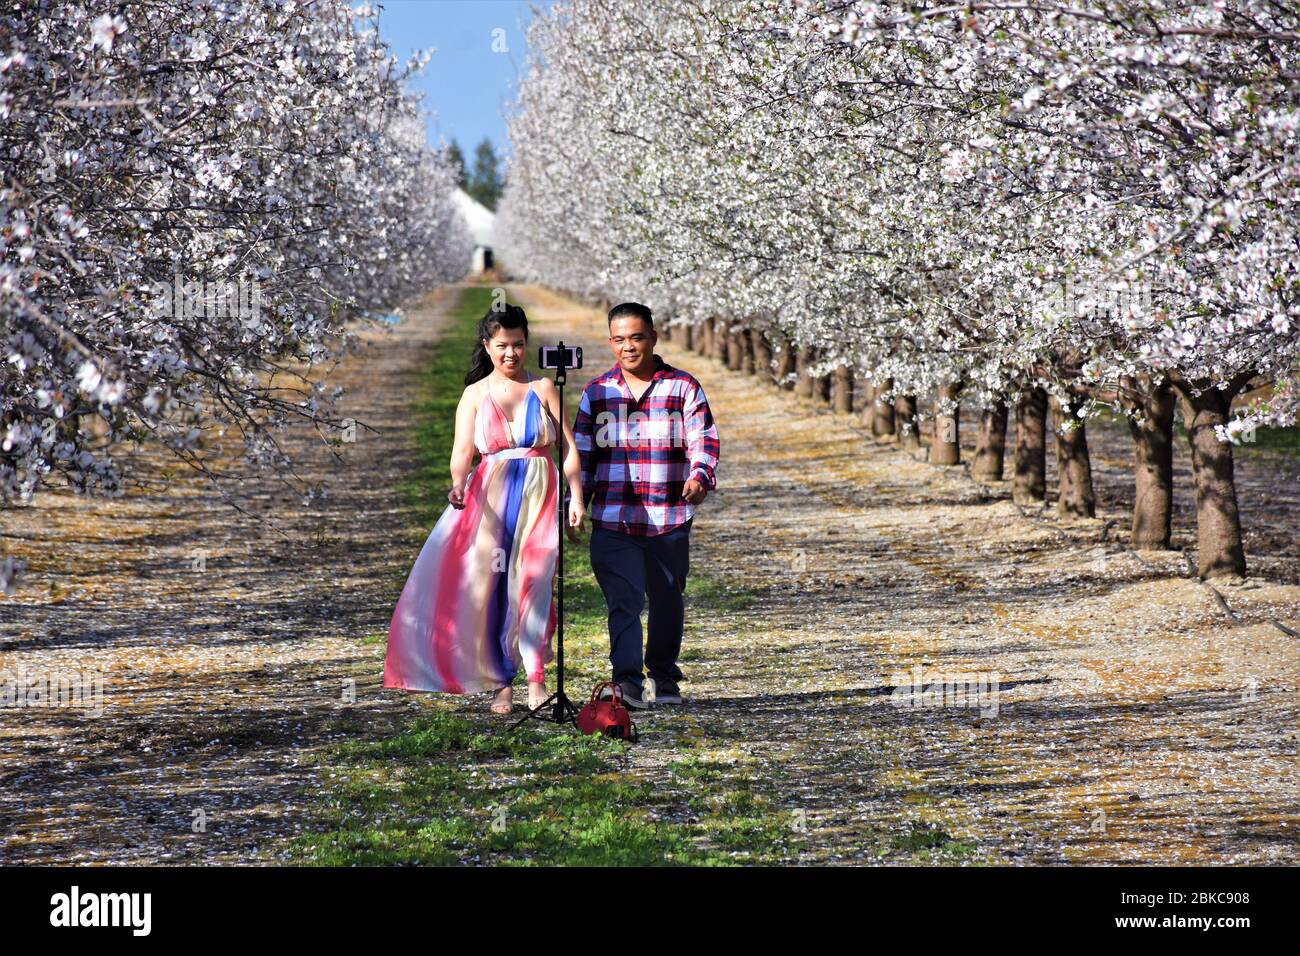 Jeune couple asiatique de souche faisant des selfies dans les fleurs d'un verger d'amandiers dans la vallée centrale de Californie, Sacramento, des semaines avant de se marier Banque D'Images